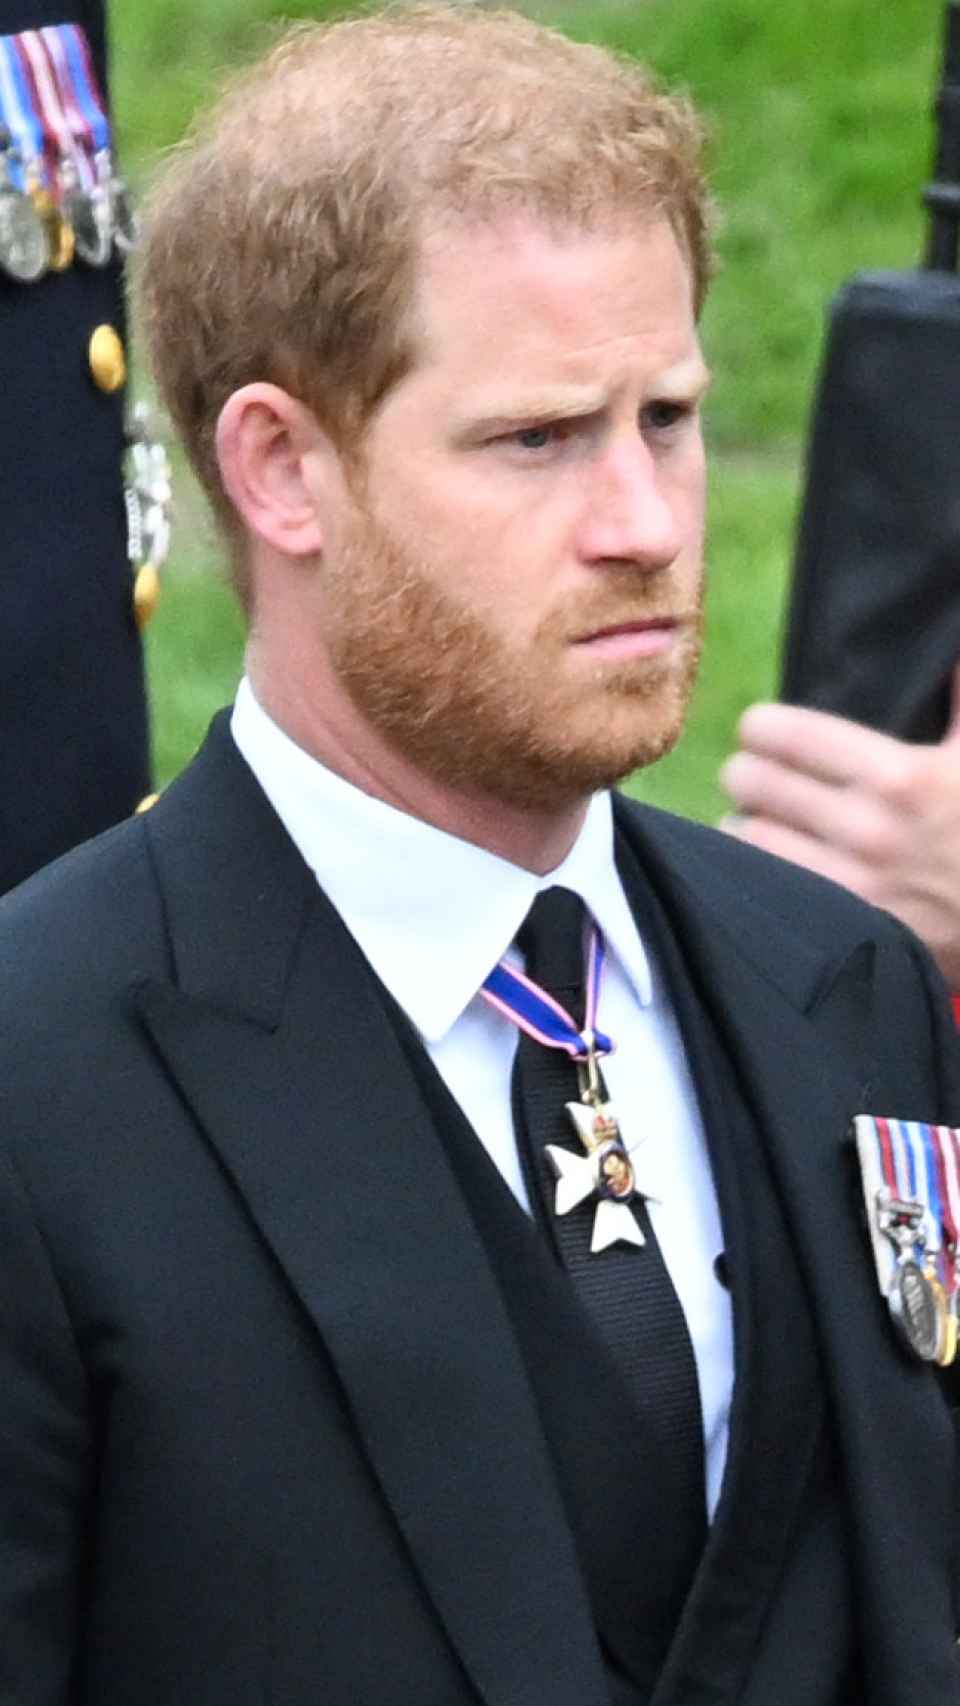 El príncipe Harry en una fotografía tomada en Windsor, en el funeral de Estado de su abuela, Isabel II.